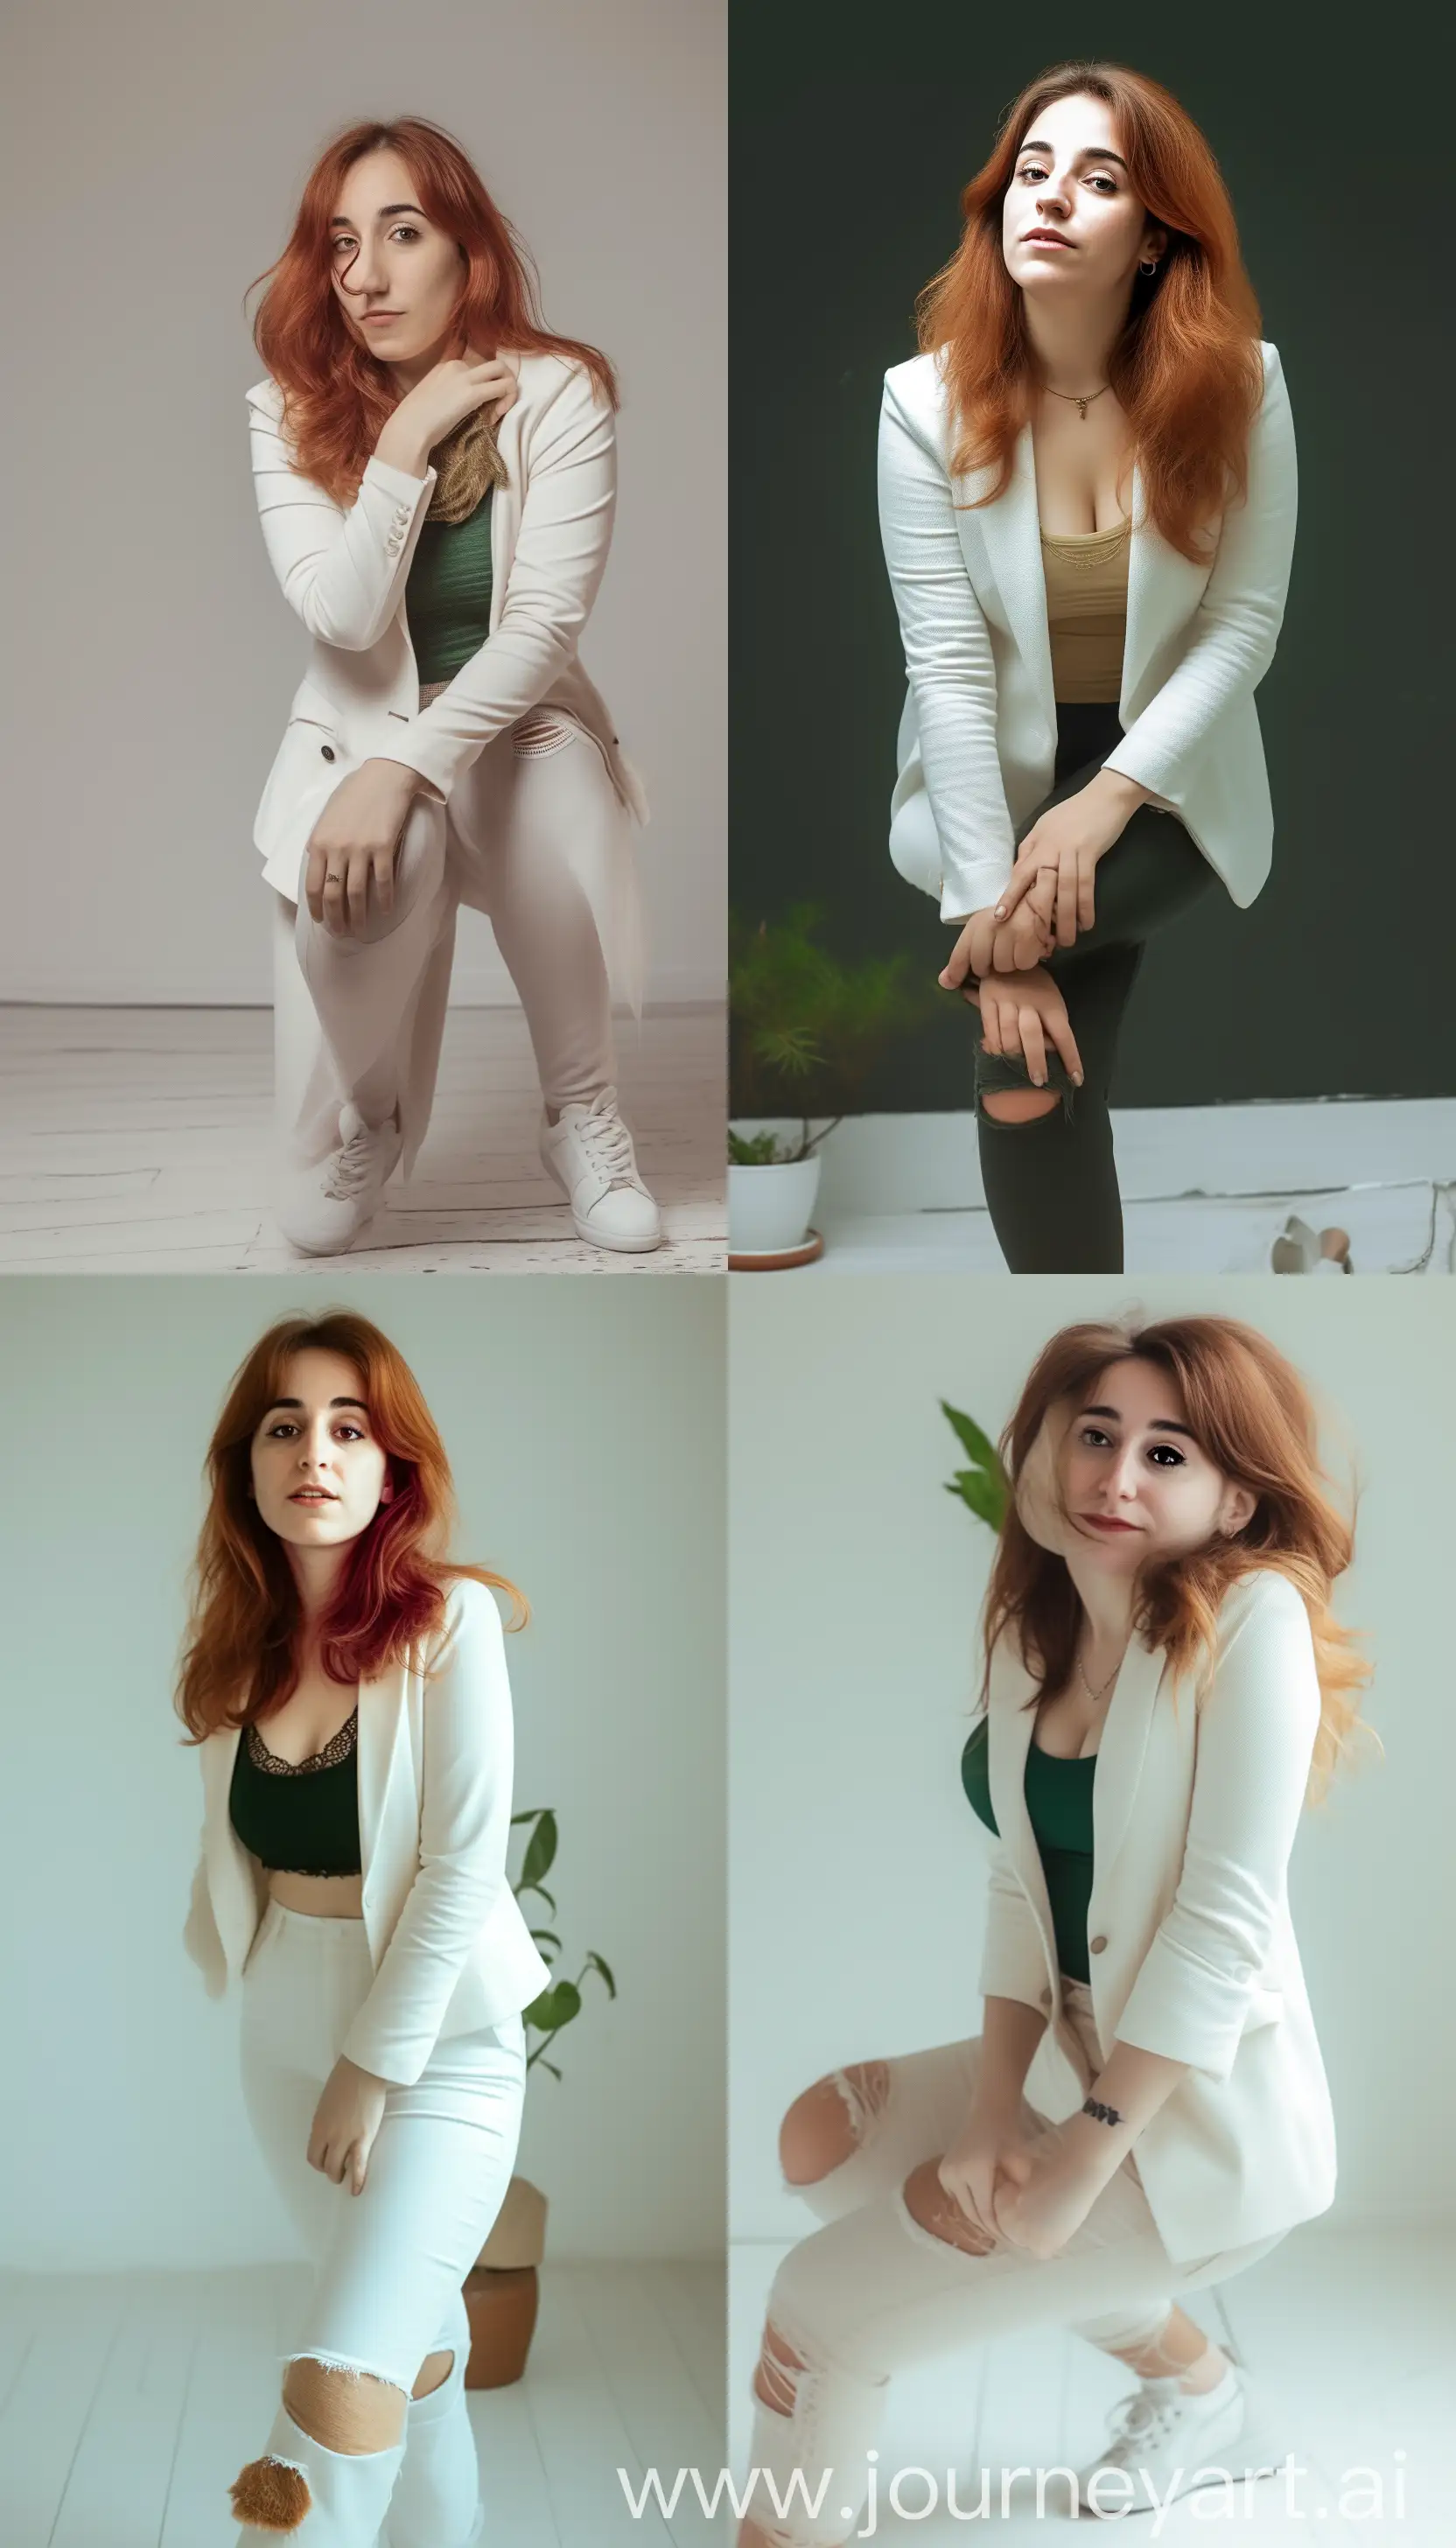 Stylish-Professional-Woman-in-White-Blazer-Strikes-Poses